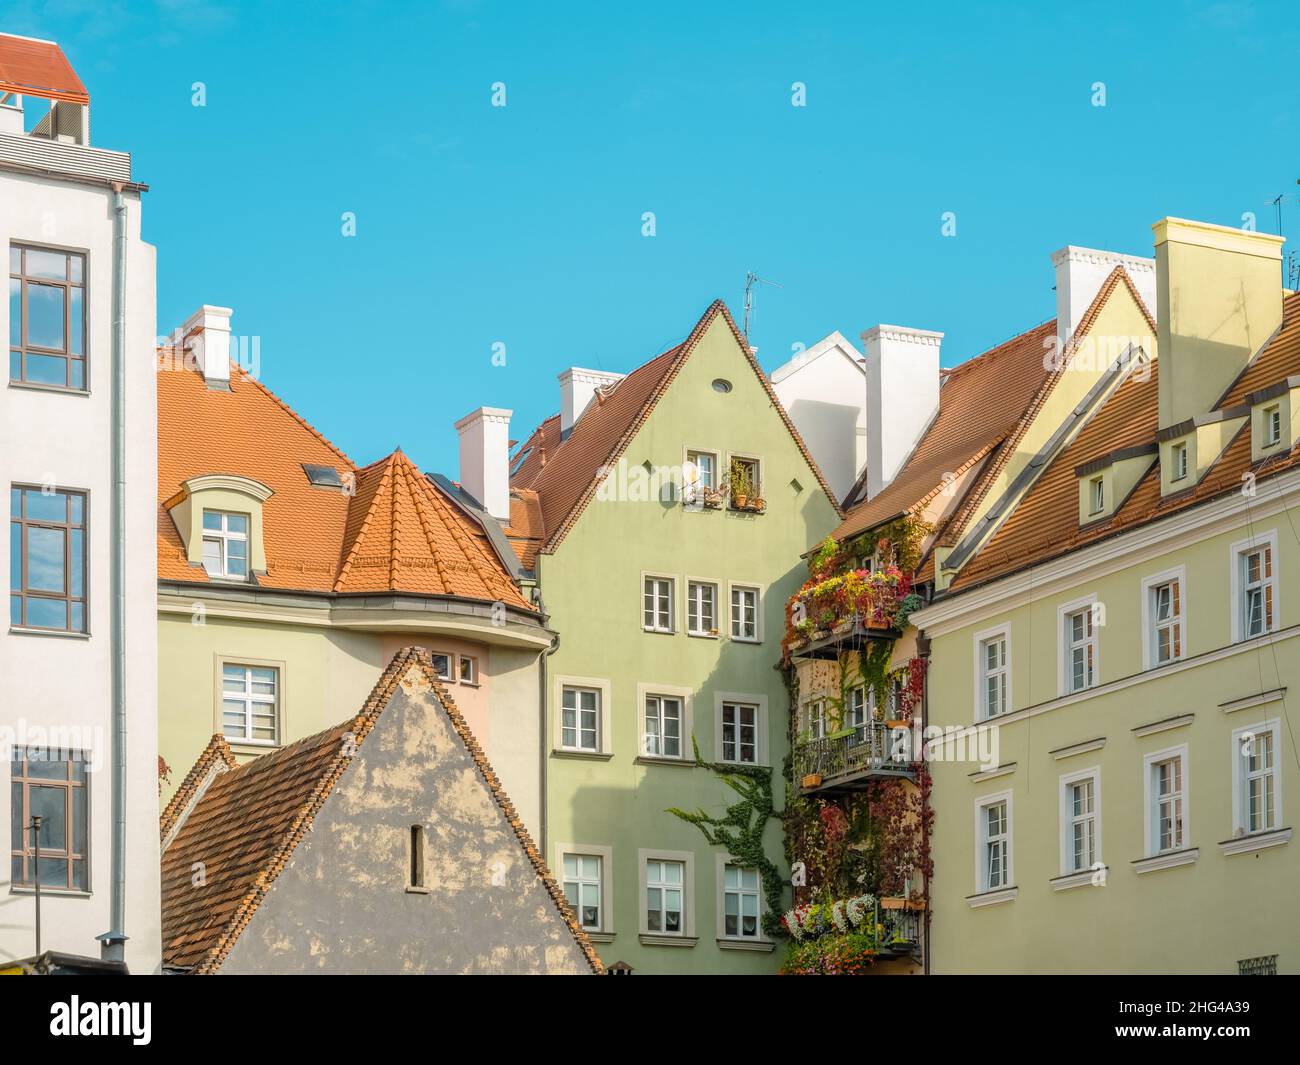 Vieilles façades colorées de maisons avec balcons confortables et méchants de lierre dans la ville médiévale européenne.Maisons confortables aux couleurs pastel avec toits carrelés à Wroclaw, po Banque D'Images